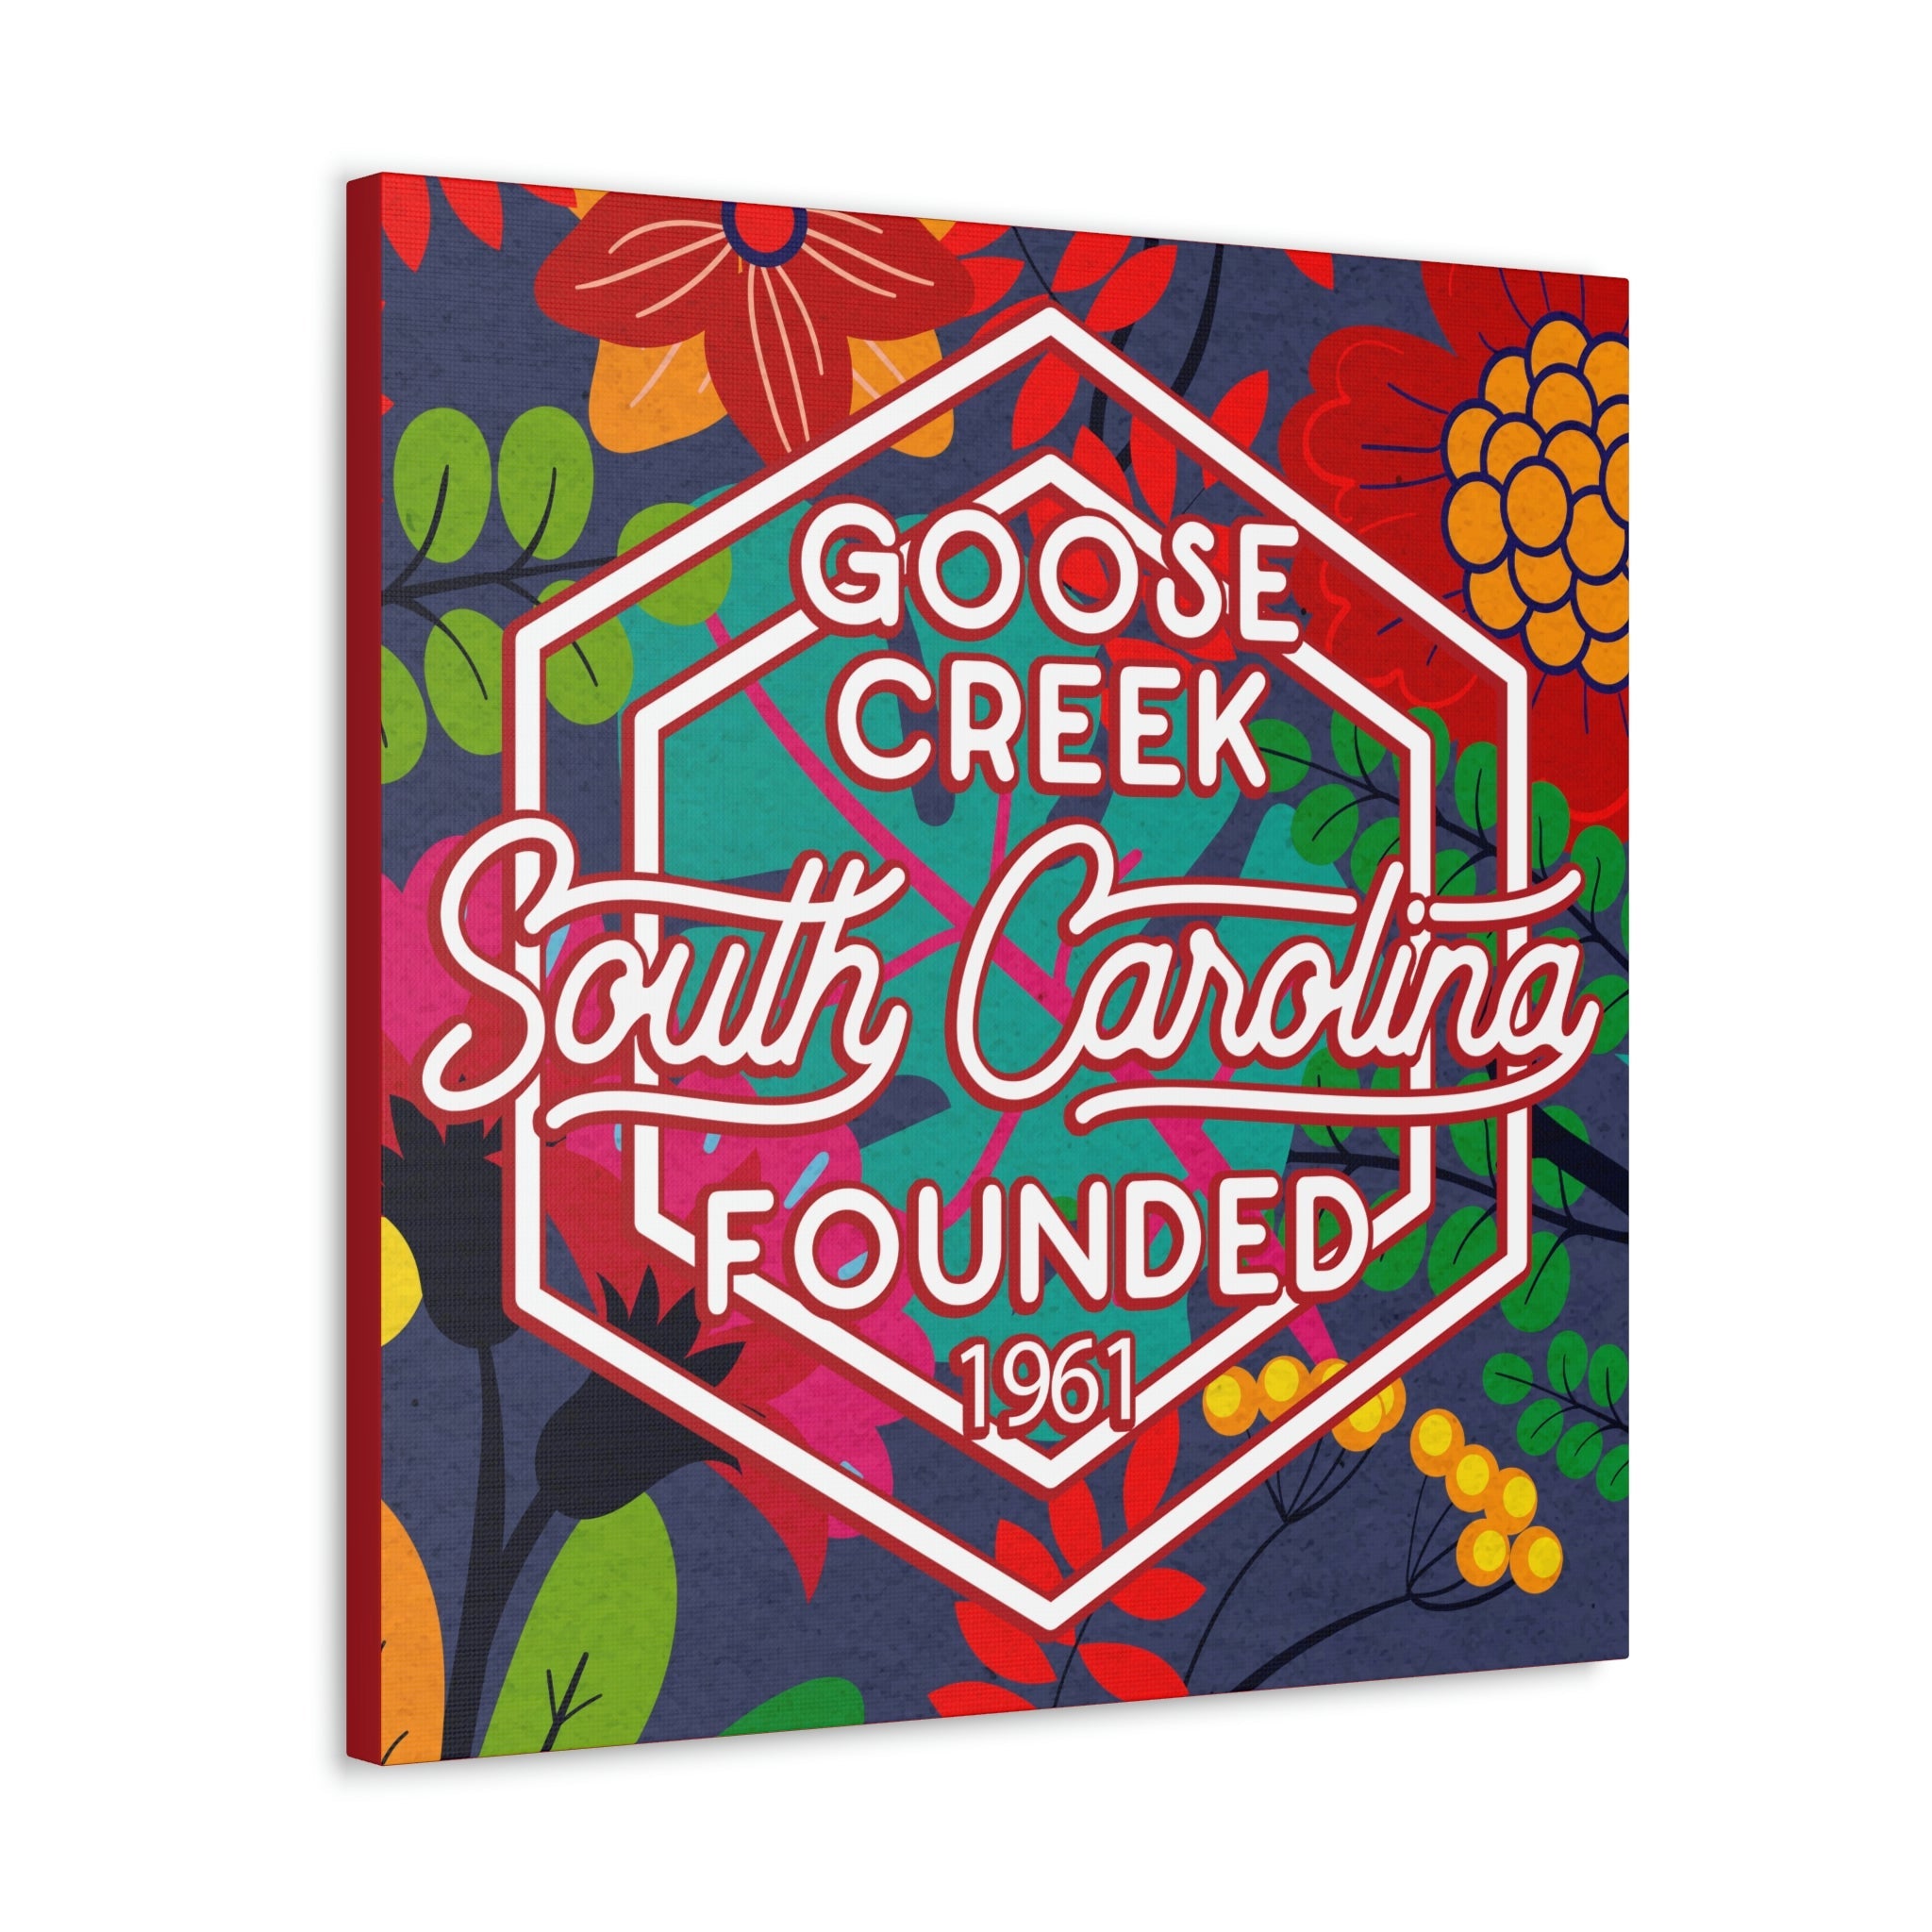 24x24 artwork of Goose Creek, South Carolina -Alpha design